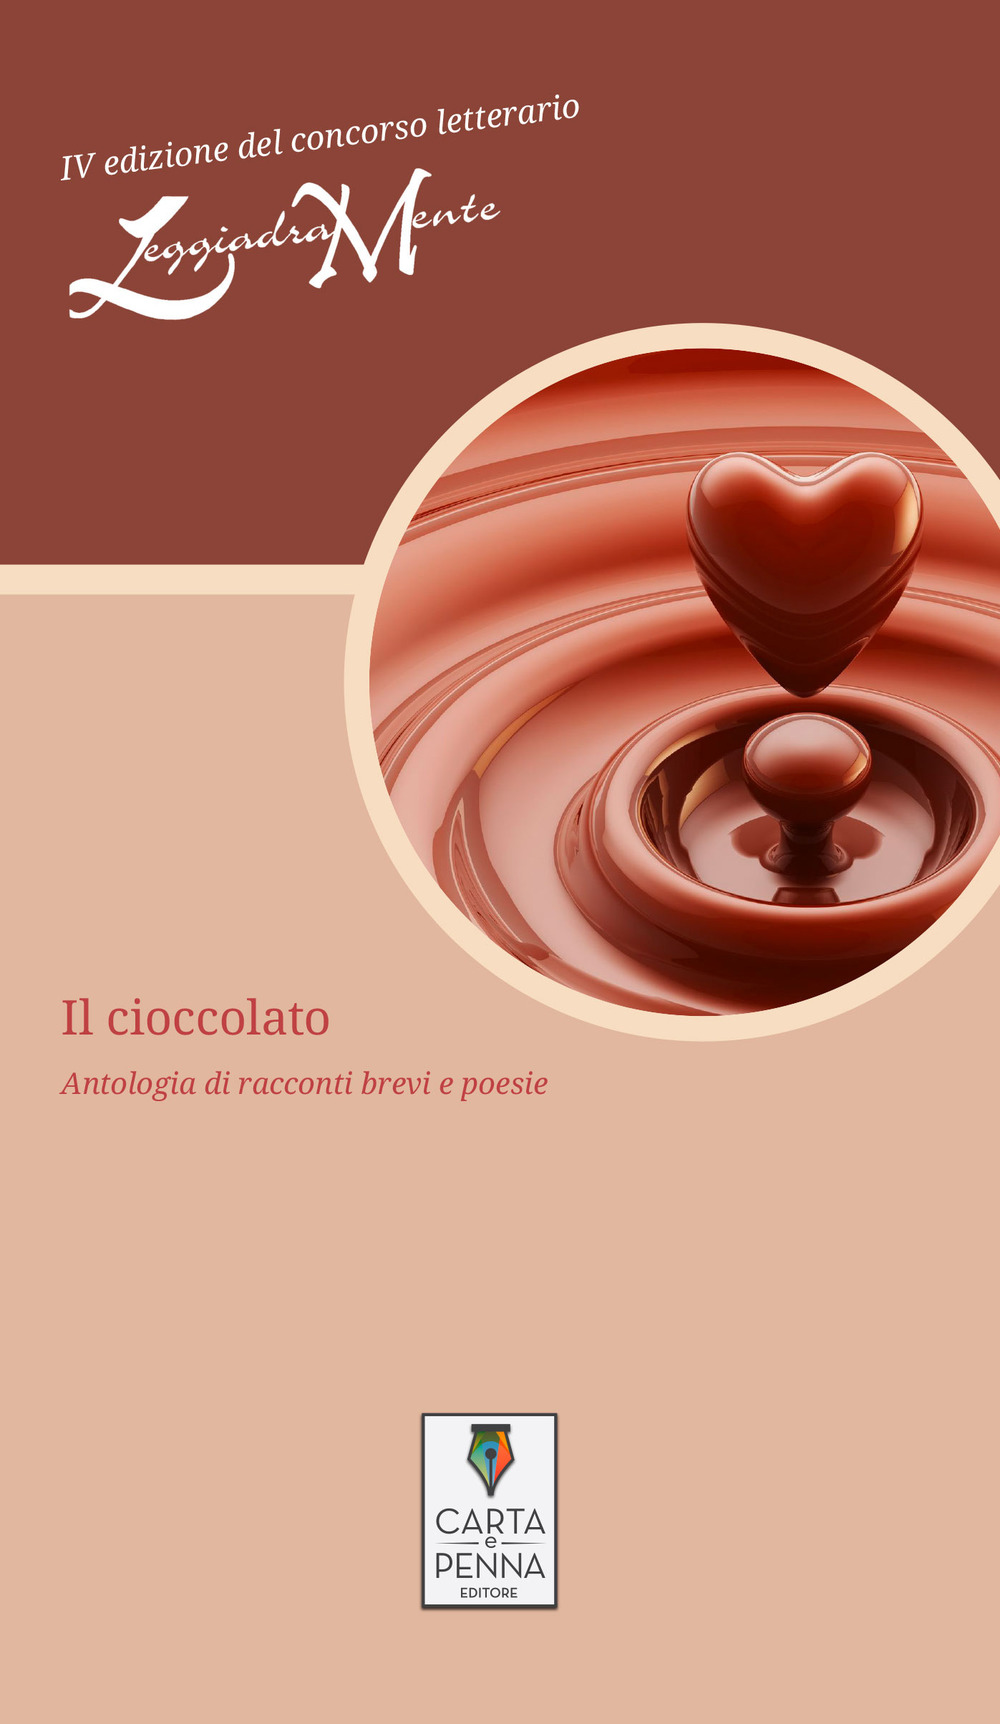 Image of Il cioccolato. Antologia di racconti brevi e poesie. 4ª edizione del concorso letterario LeggiadraMente